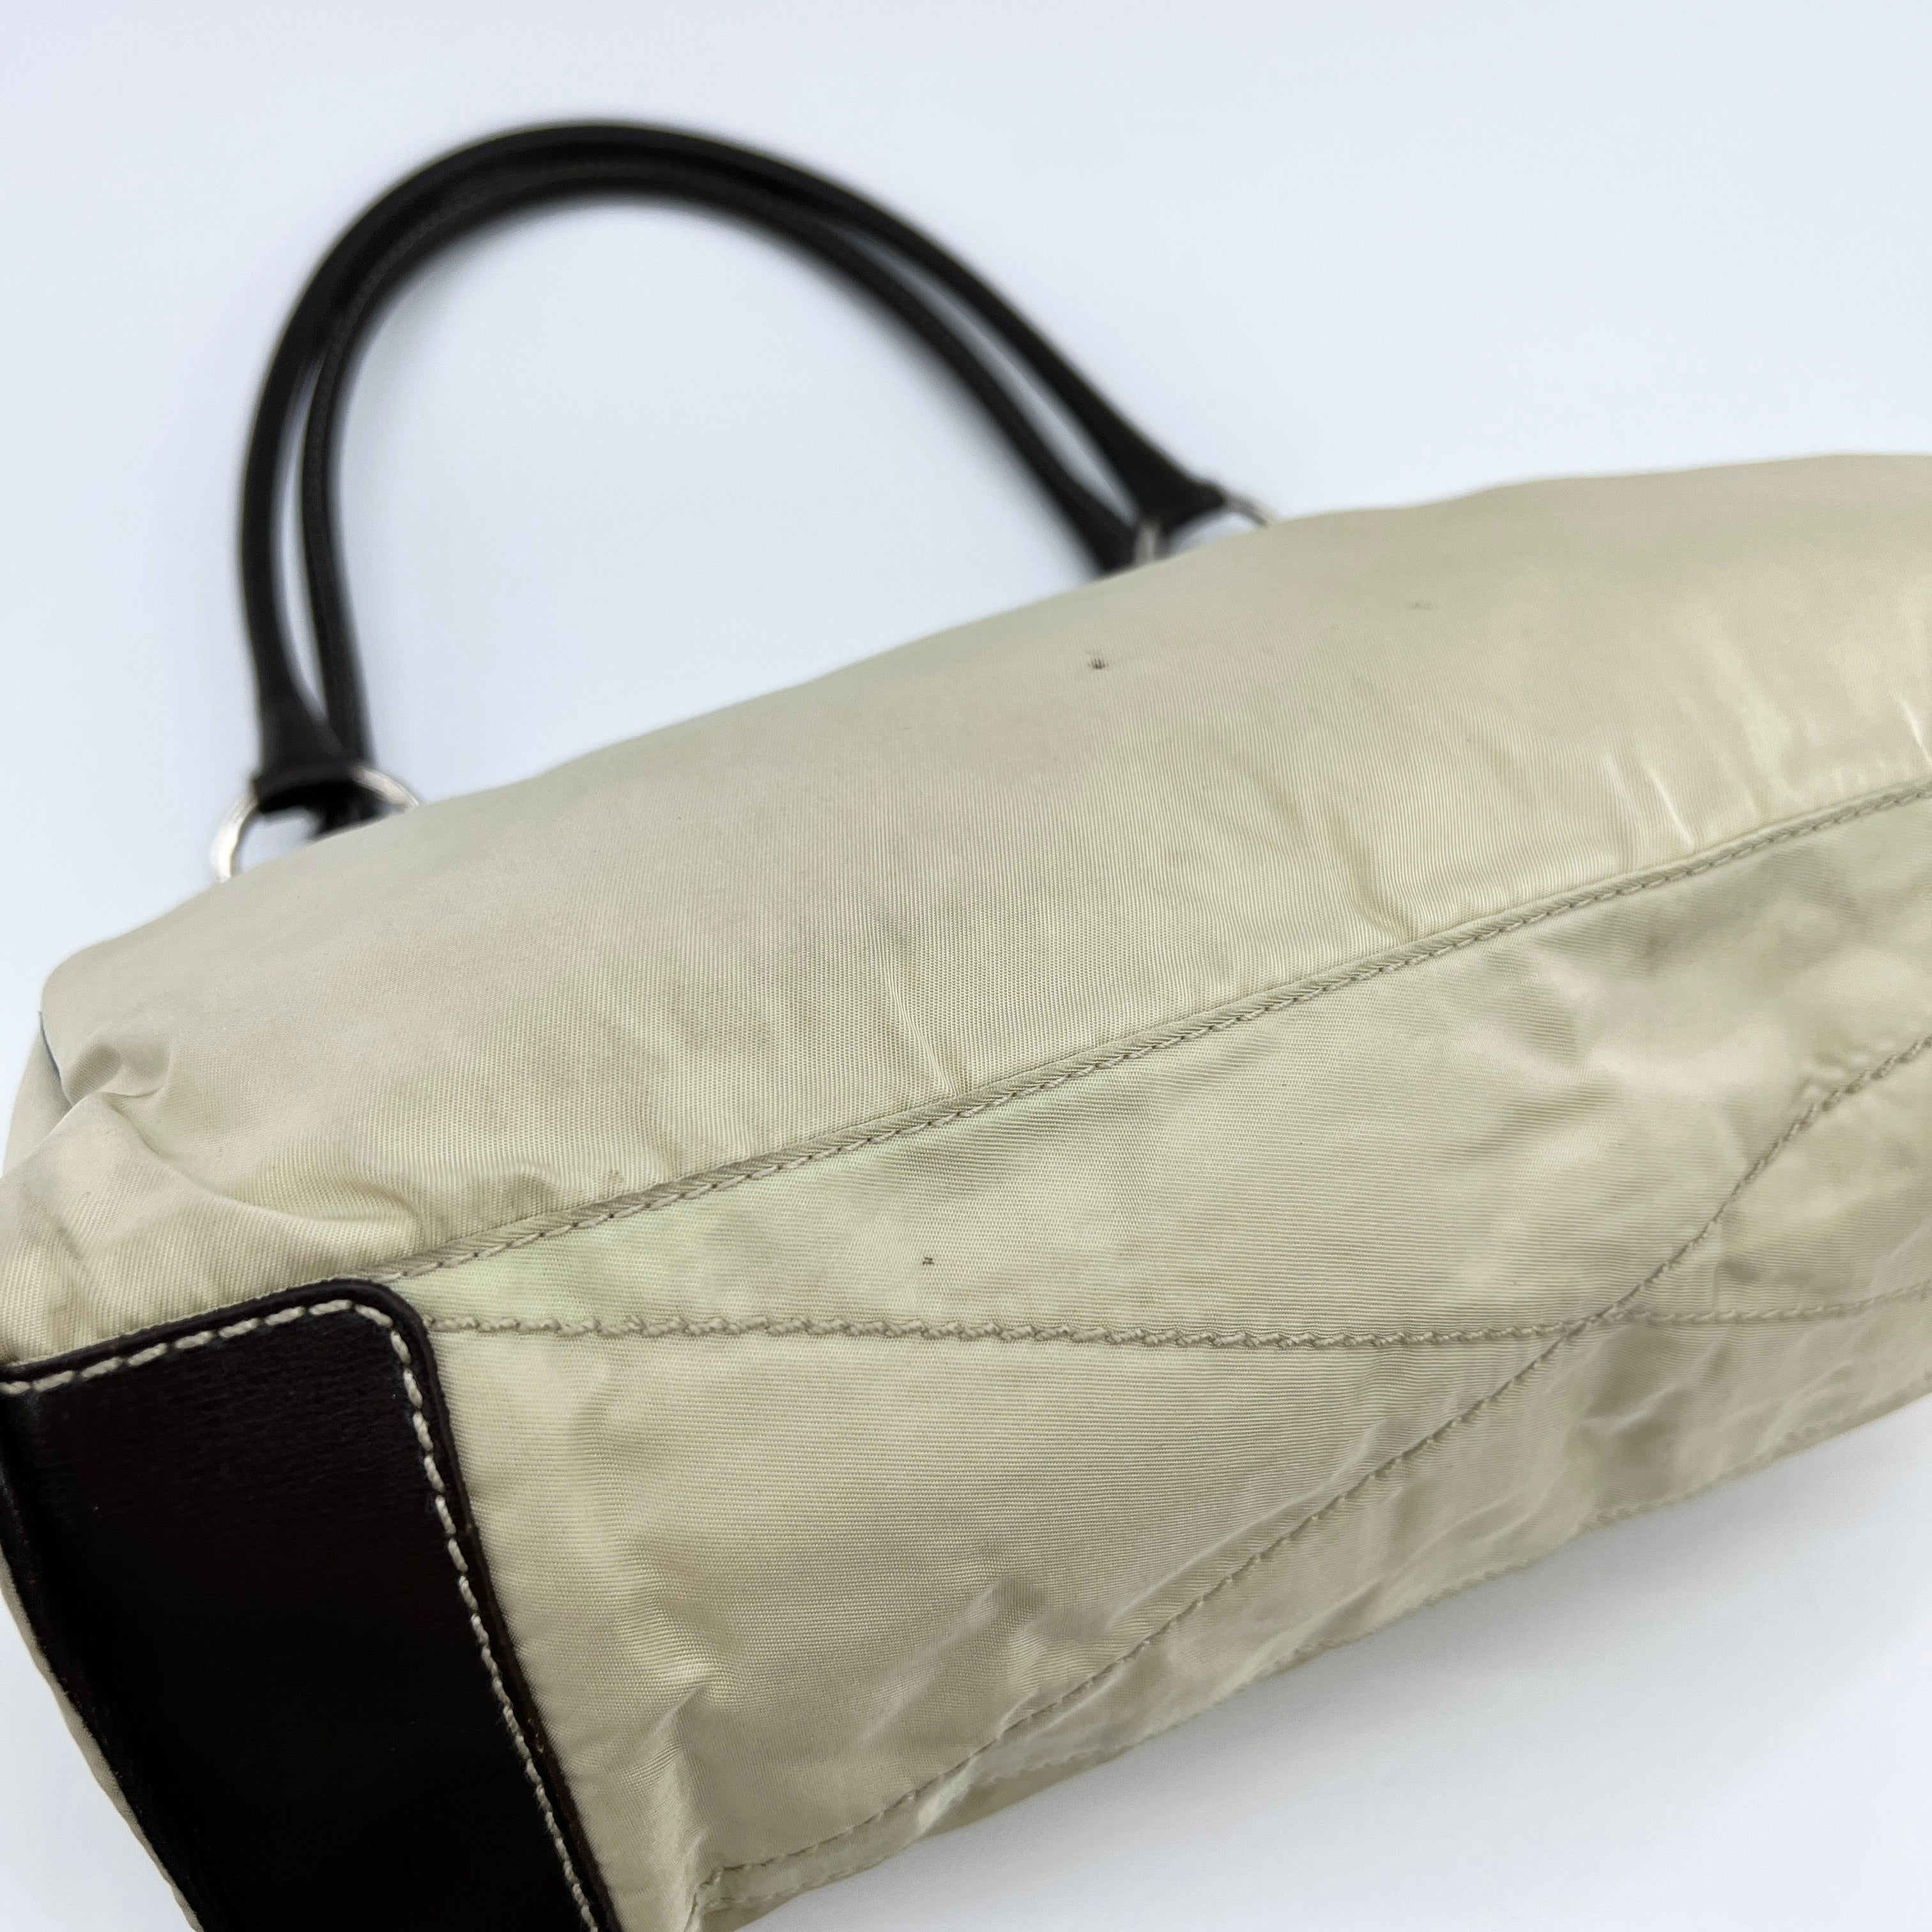 Nylon Shoulder Bag Beige Brown